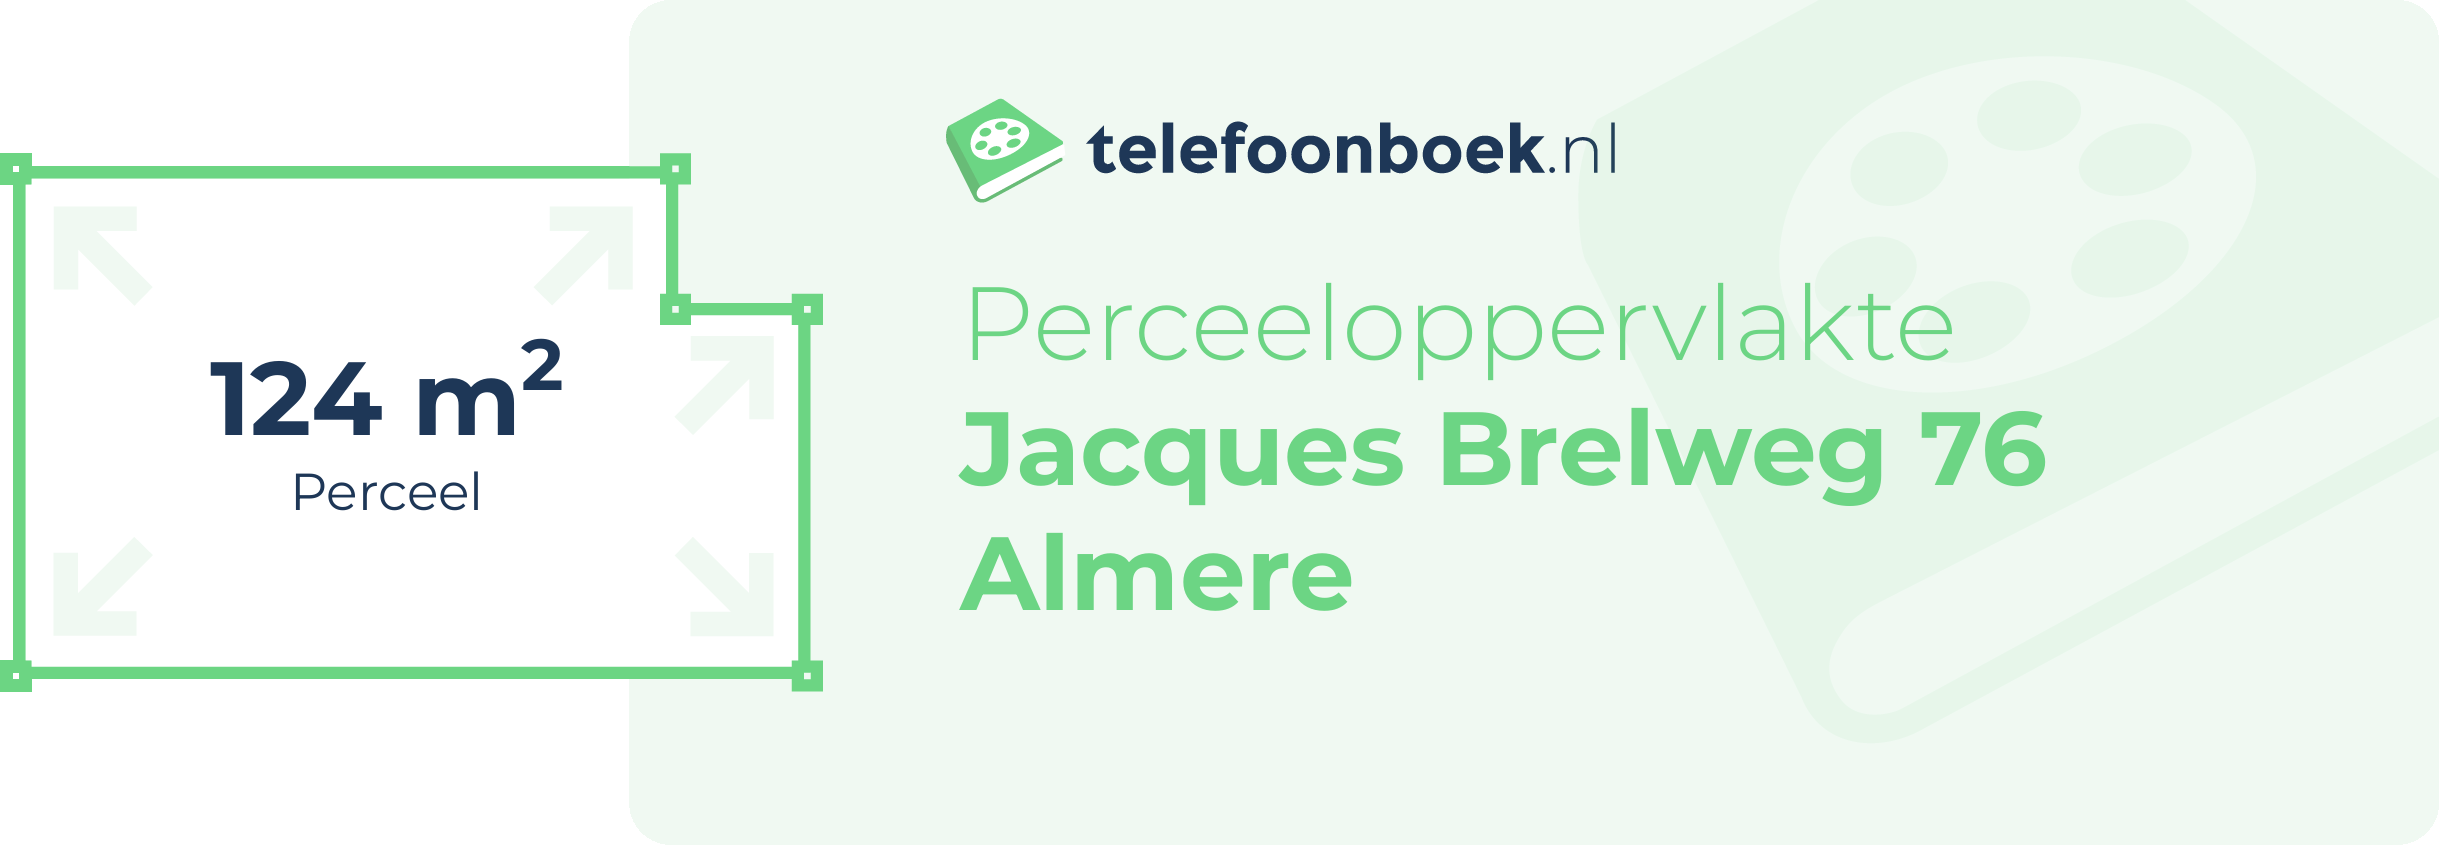 Perceeloppervlakte Jacques Brelweg 76 Almere